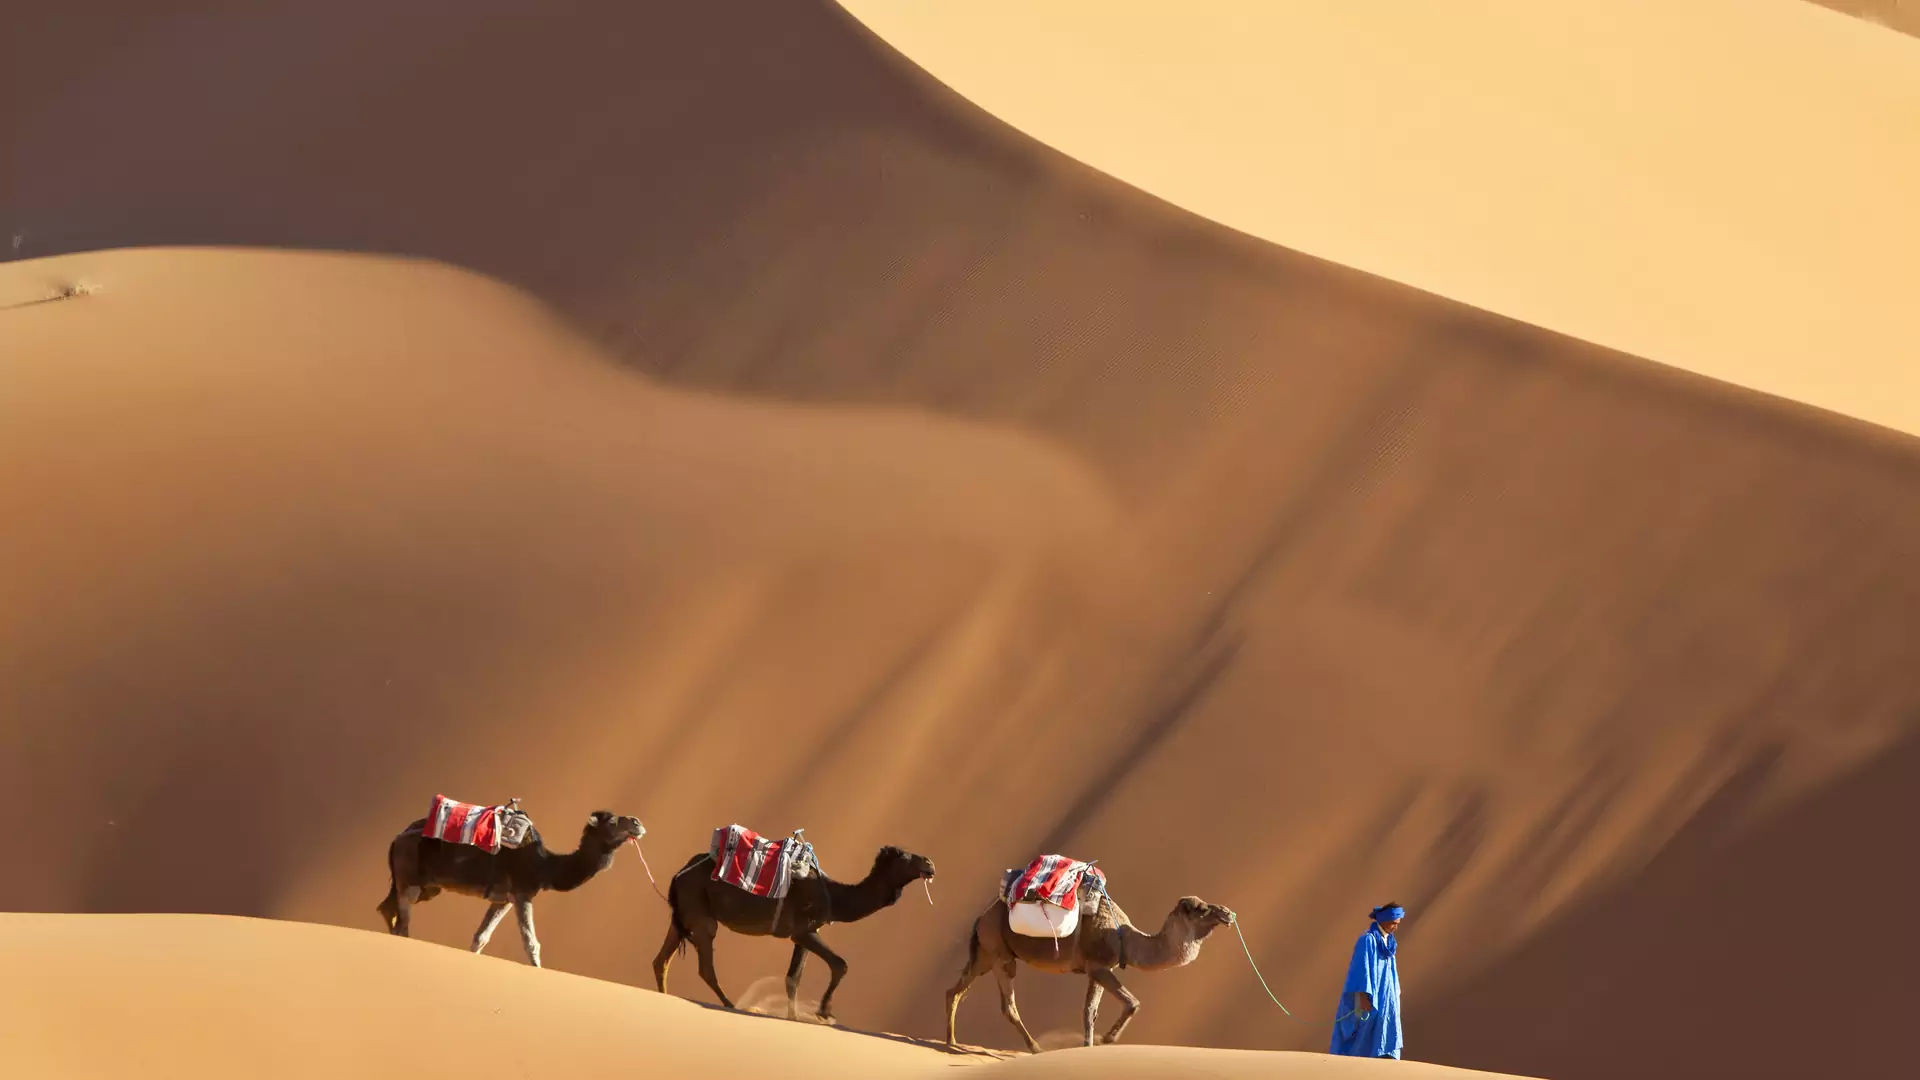 Wakacje w Maroku. Wycieczka na pustynie, trekking czy wspinaczka?